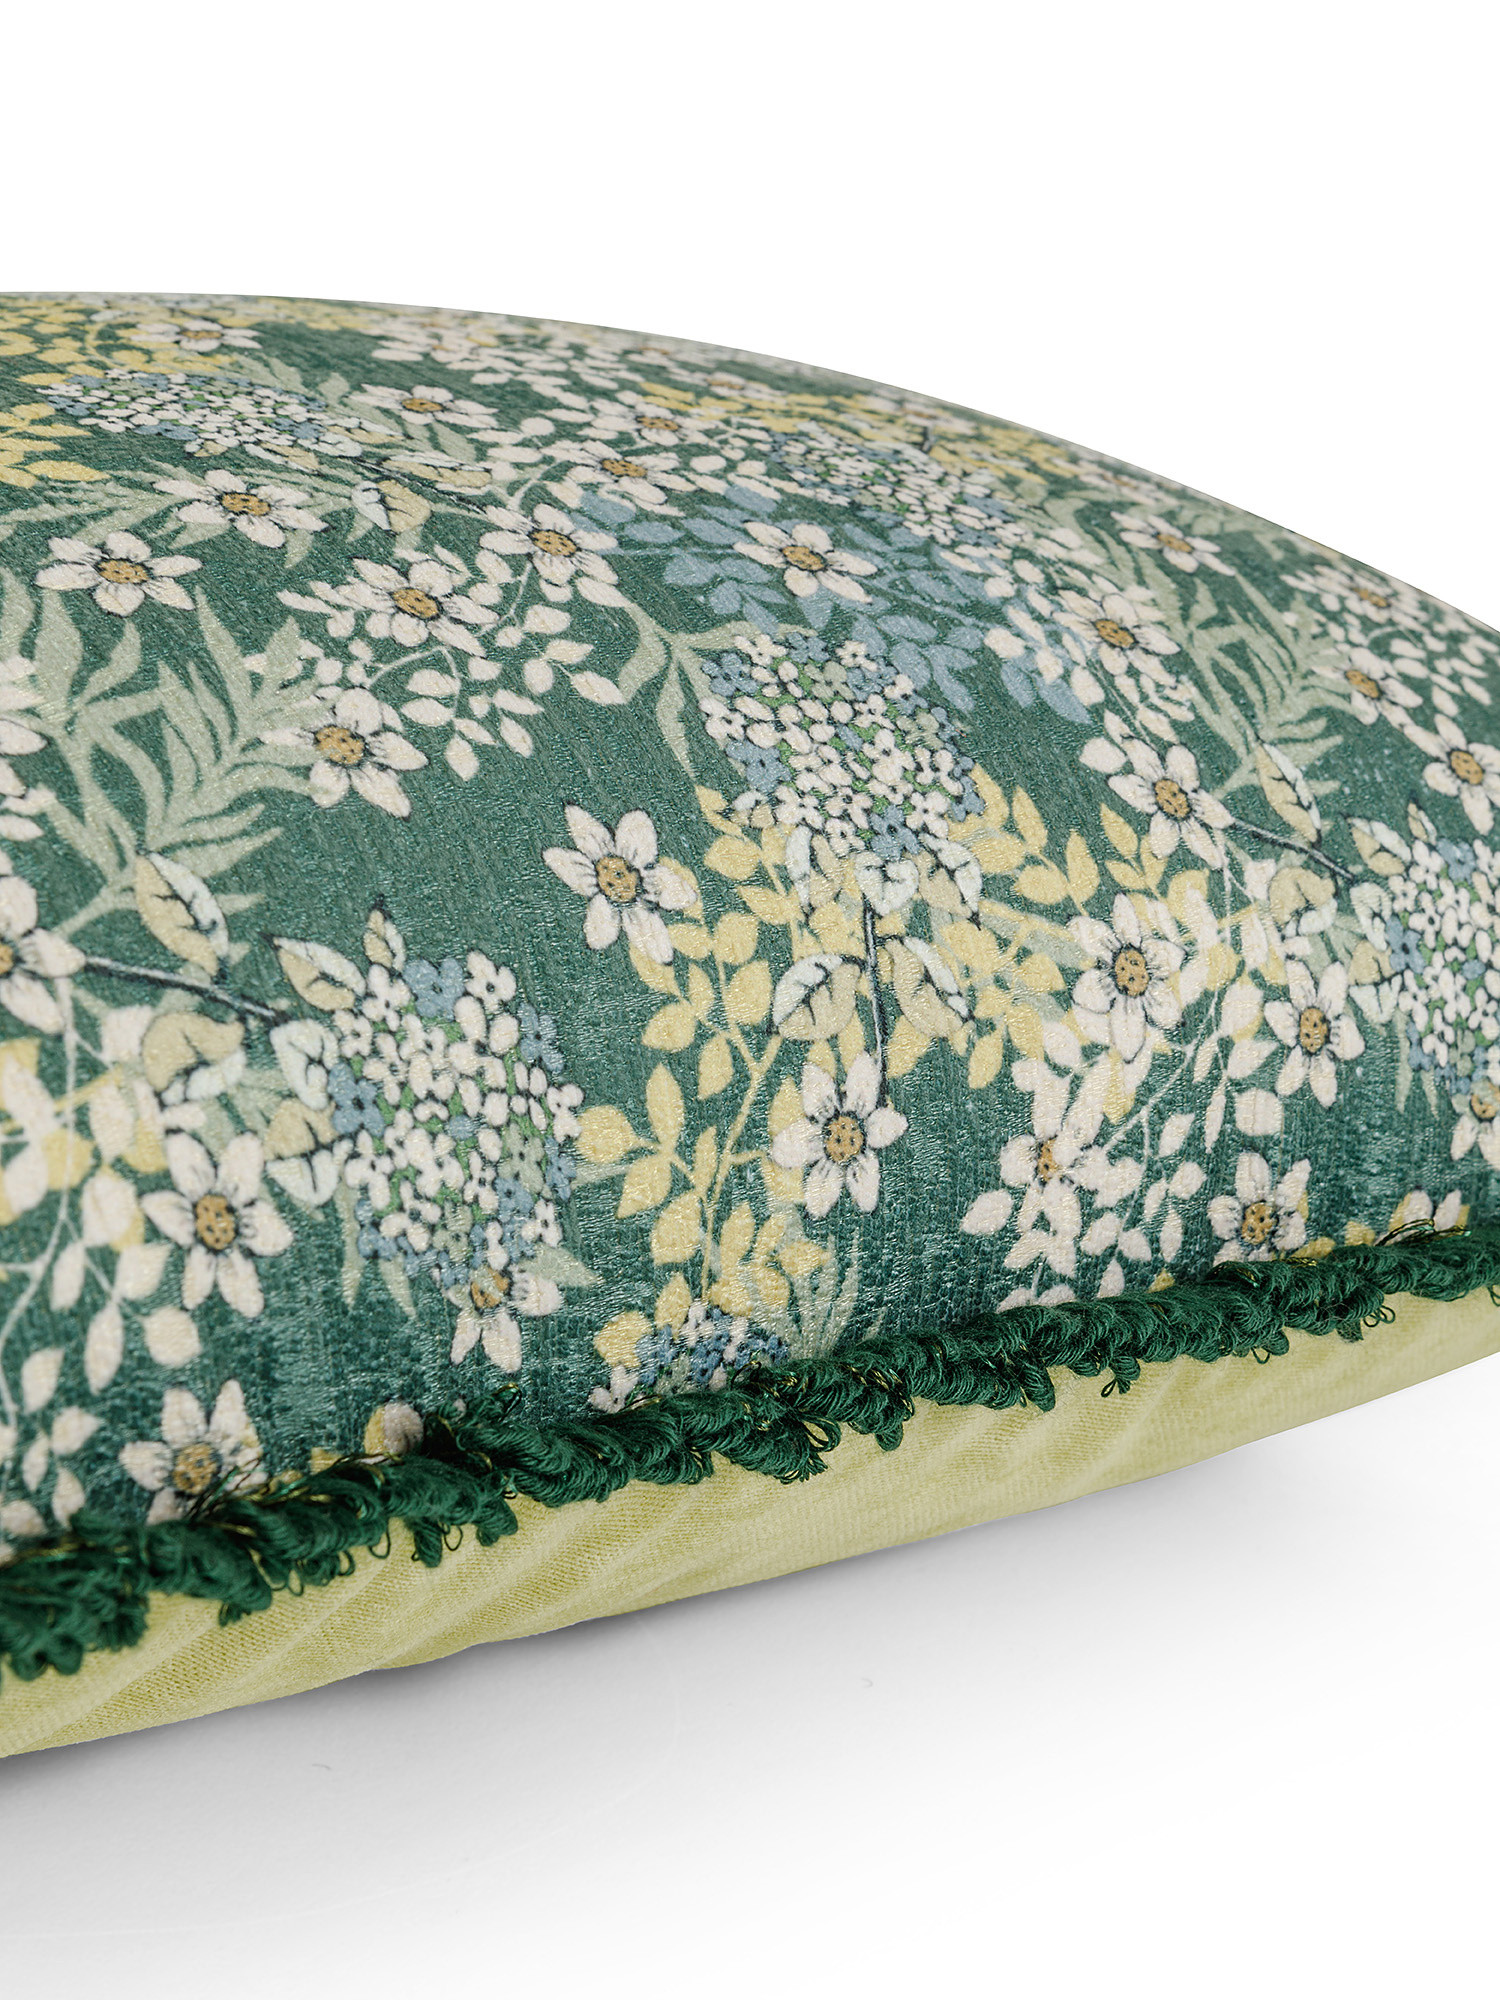 Cuscino stampa fiorellini 45x45cm, Verde, large image number 1